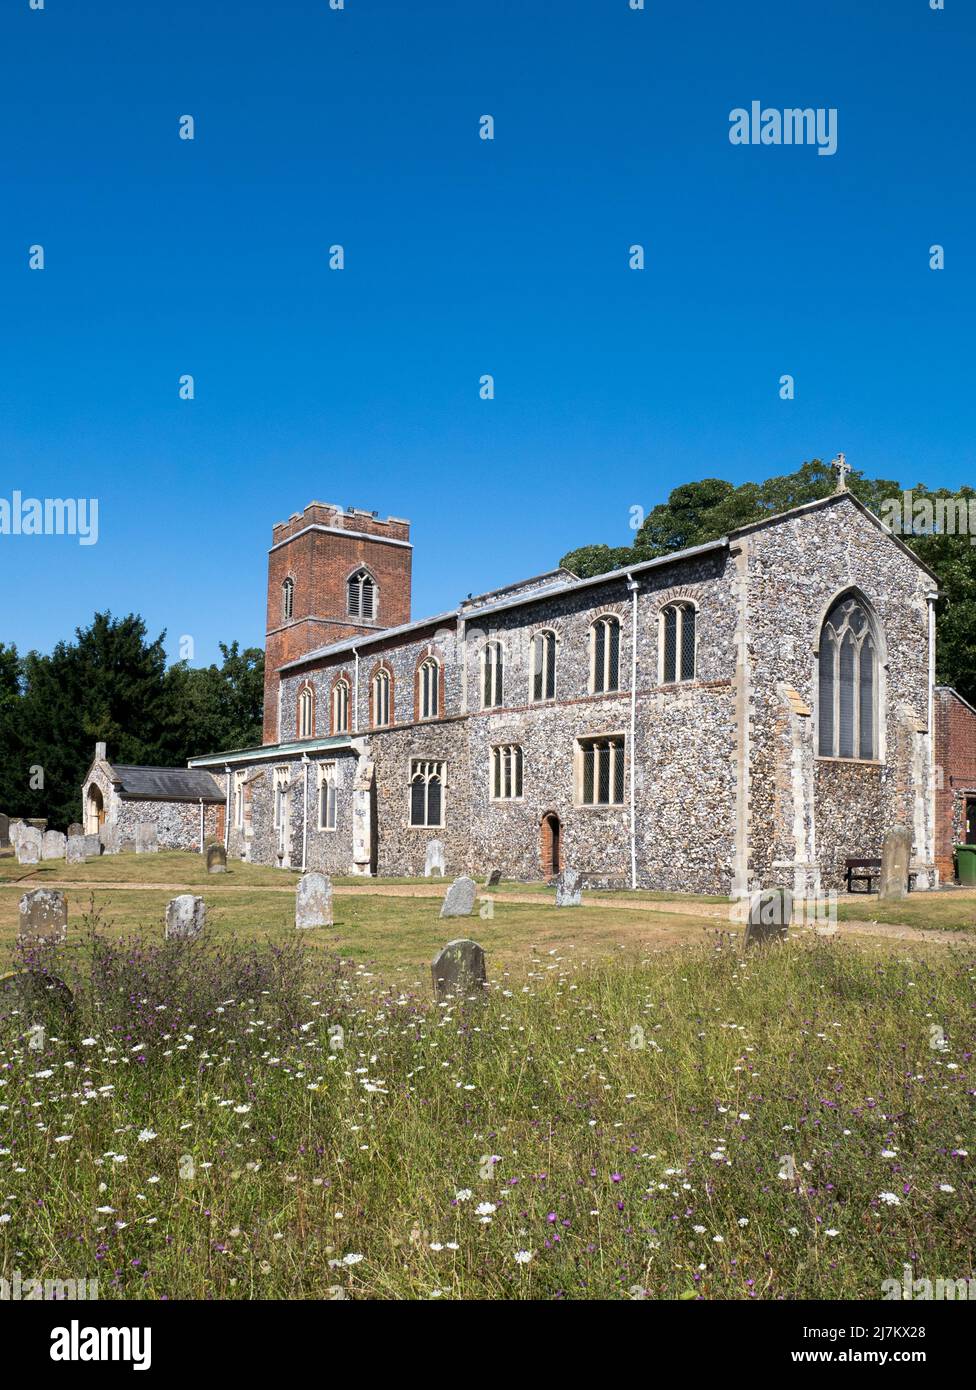 La chiesa parrocchiale di St Mary e St Margaret costruita principalmente in selce a Sprowston, risalente al 14th ° secolo, Sprowston, Norwich, Norfolk, Inghilterra, REGNO UNITO Foto Stock